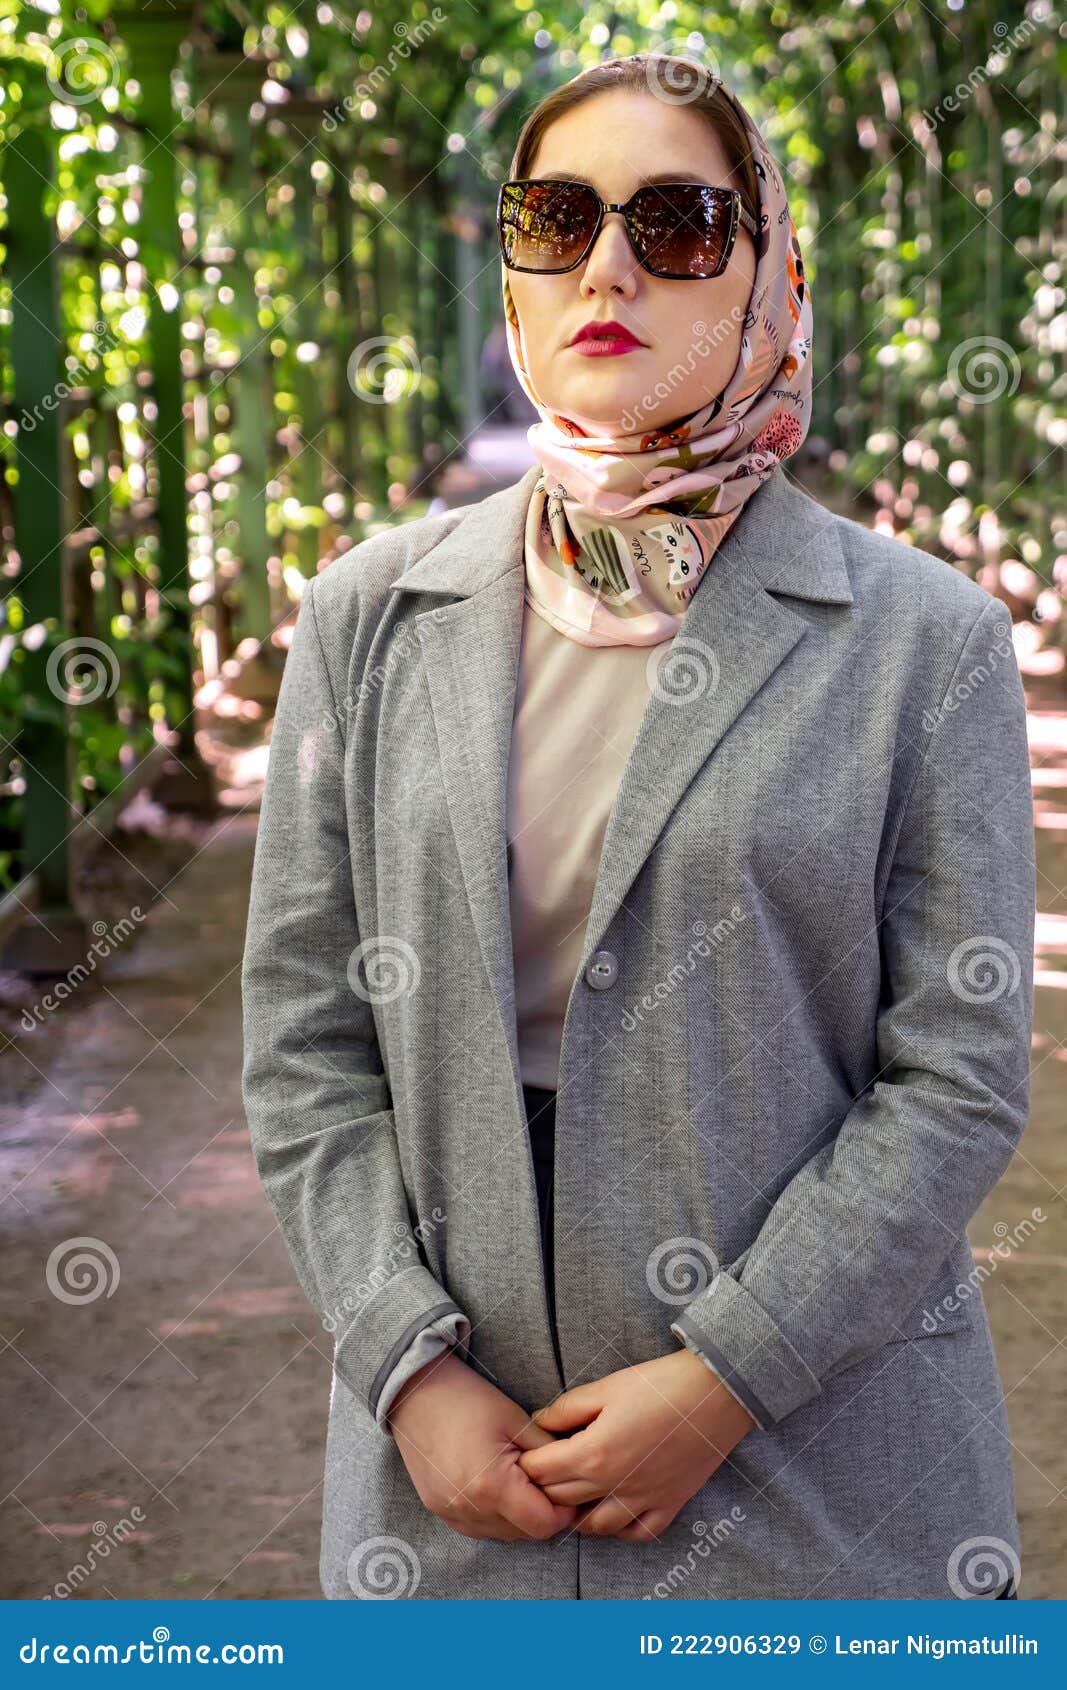 海量穆斯林时尚个性美图头像 总有你喜欢的一张-搜狐